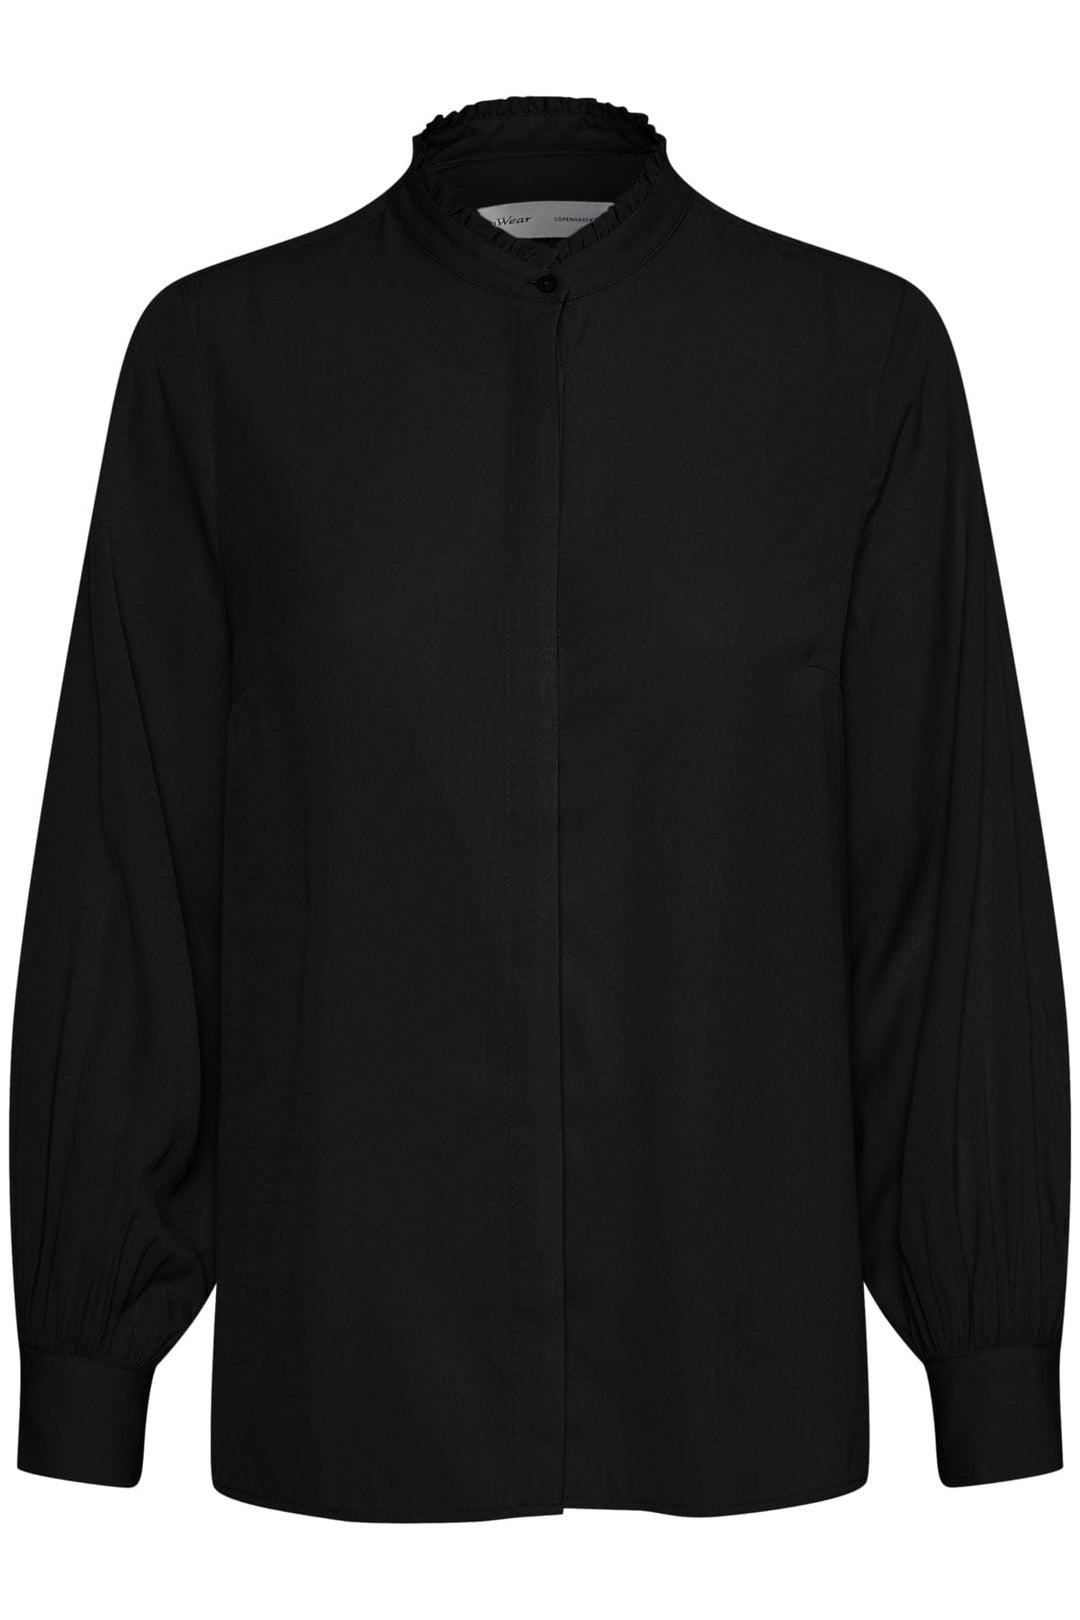 Nixieiw Shirt Black | Skjorter og bluser | Smuk - Dameklær på nett